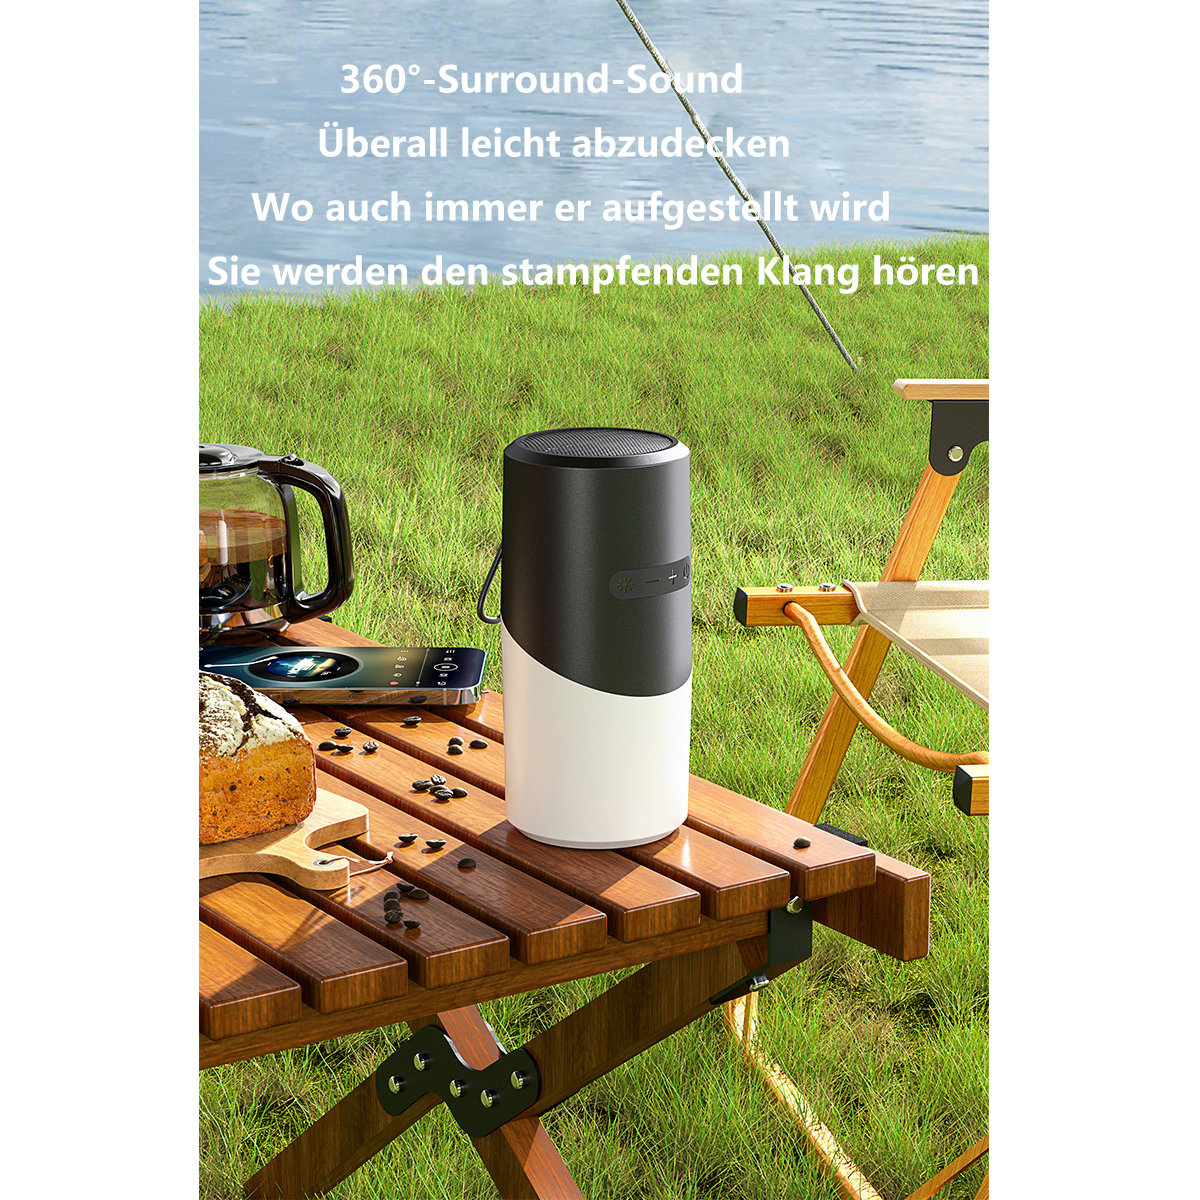 light Weiß, ambient portable speaker waterproof Wasserfest bluetooth SYNTEK Wireless Lautsprecher small Bluetooth-Lautsprecher, audio light outdoor